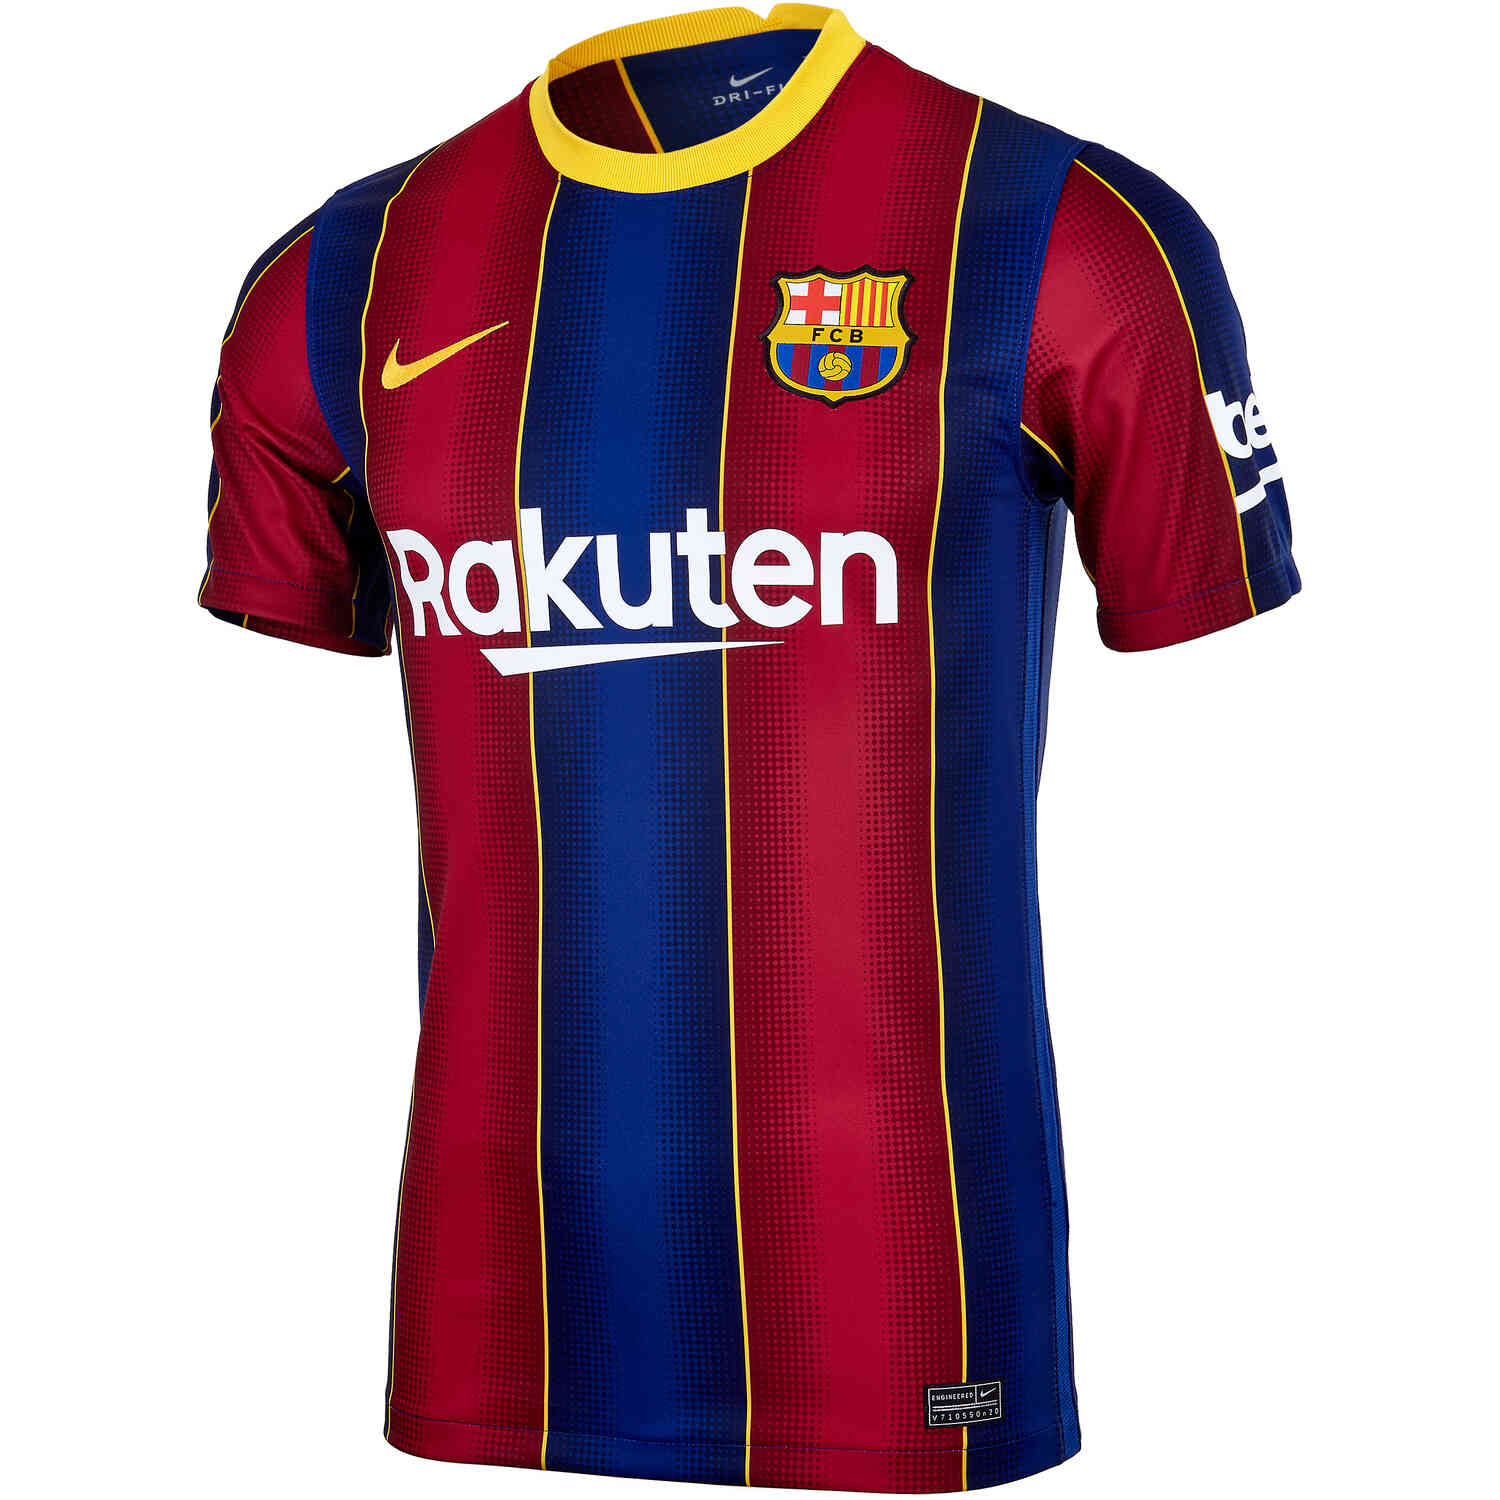 2020/21 Kids Nike Barcelona Home Jersey - SoccerPro